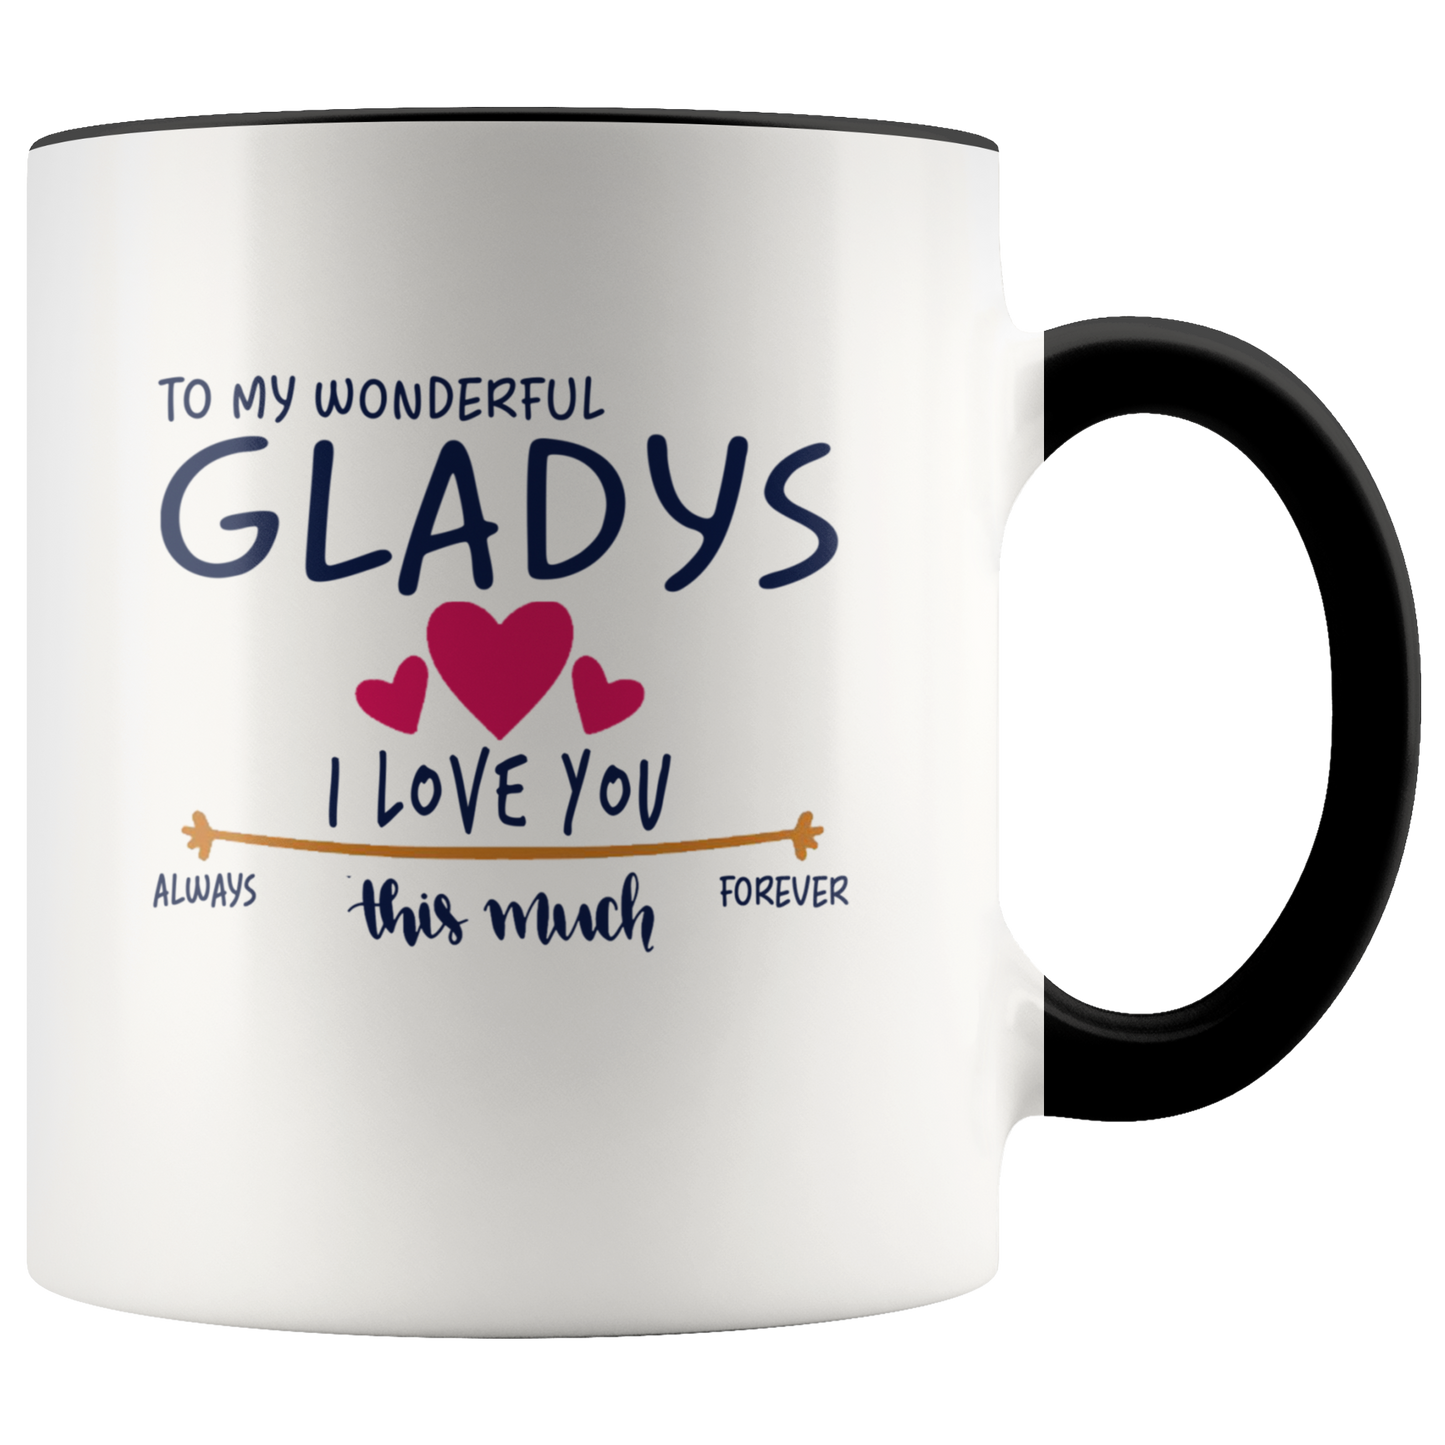 M-21259008-sp-23928 - [ Gladys | 1 | 1 ]Valentines Day Coffee Mug With Name Gladys - To My Wonderful